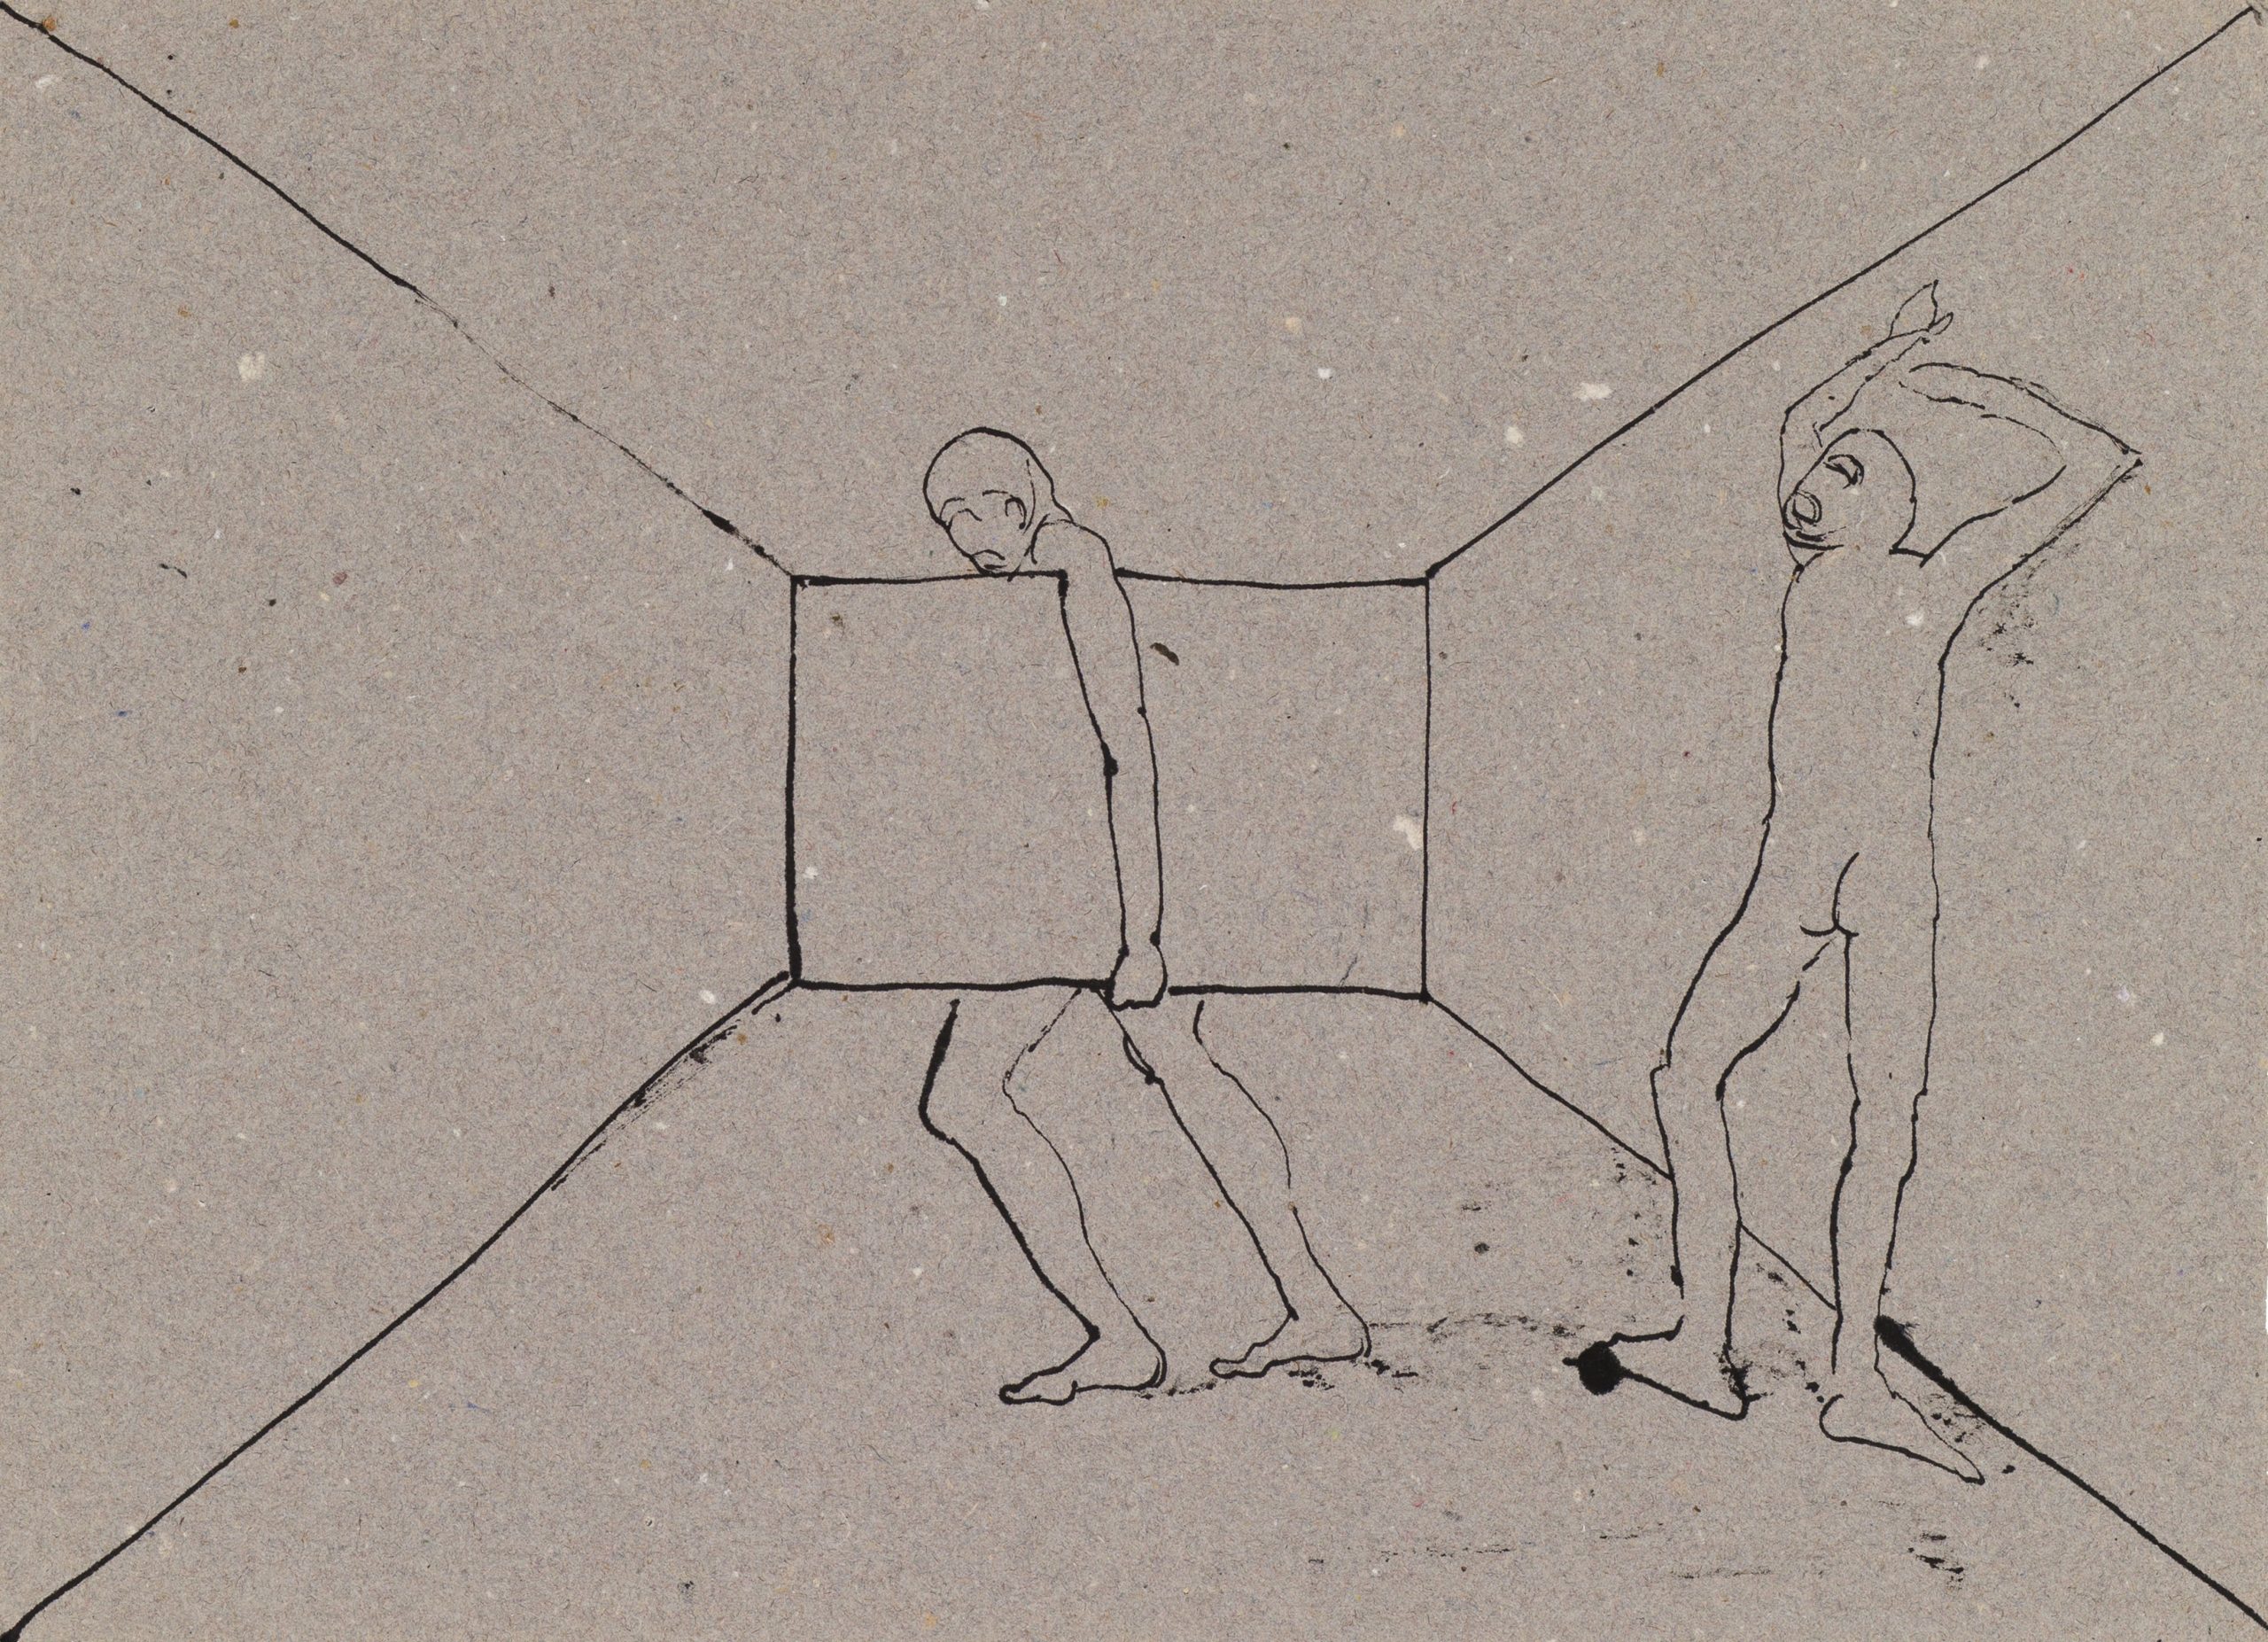 05_弗拉基米爾・可可利亞，《大循環素描》(044)，1982-85，紙本素描，44 x 32公分。藝術家與臺北市立美術館提供。